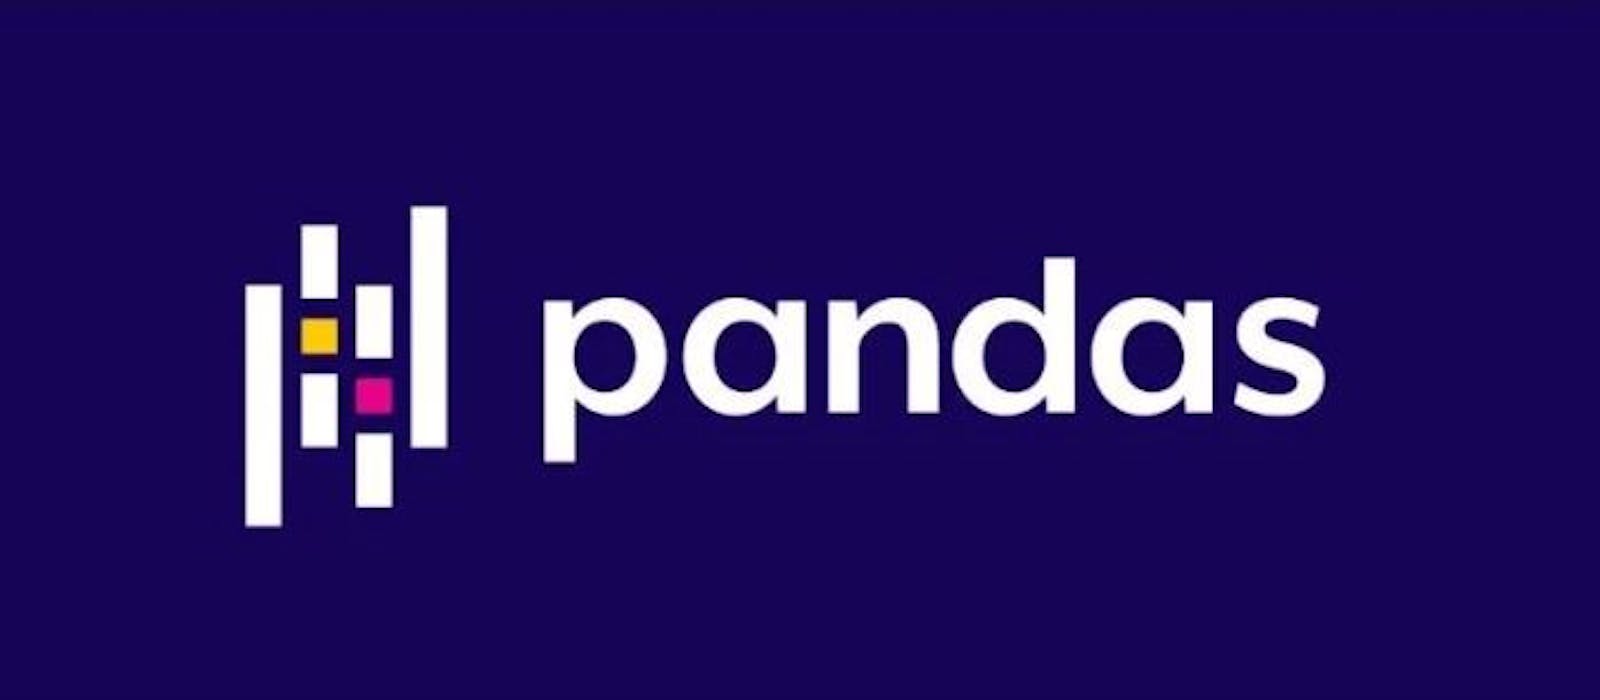 Pandas - Cleaning Data